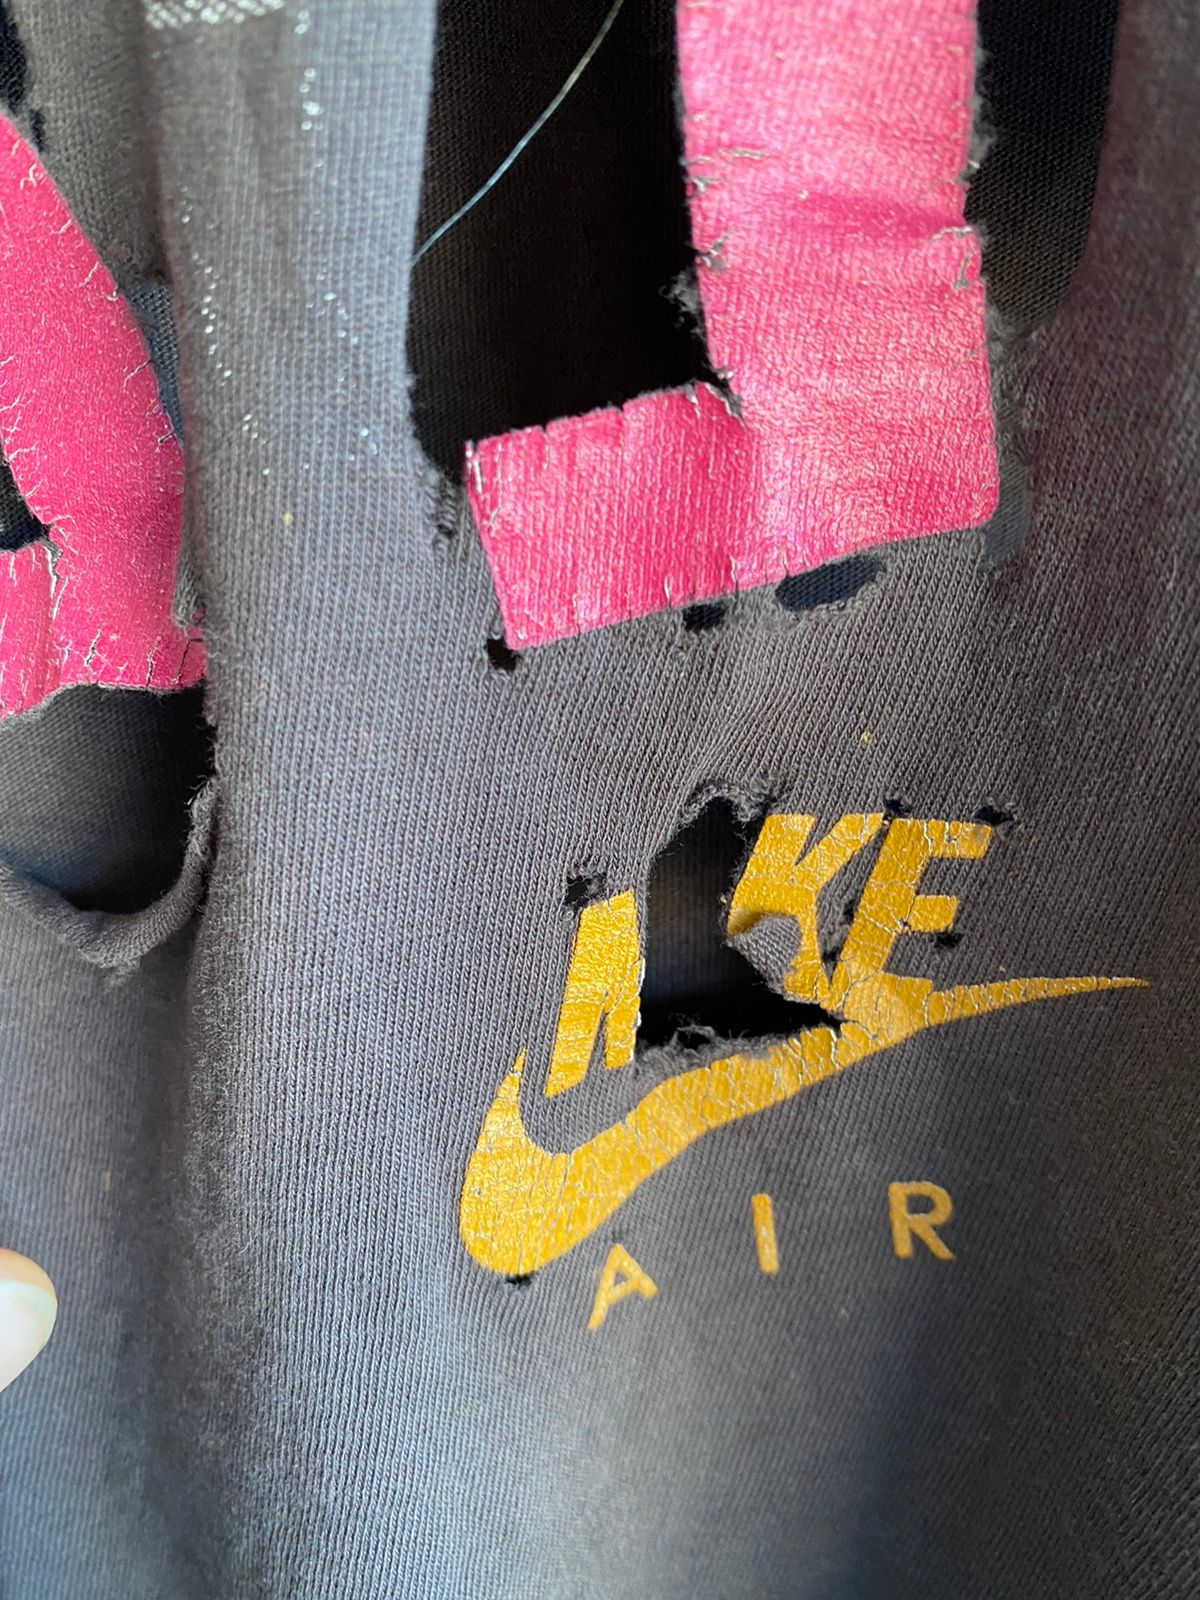 VINTAGE 90s THRASHED ‘AIR’ Jordan Nike Shirt RARE!